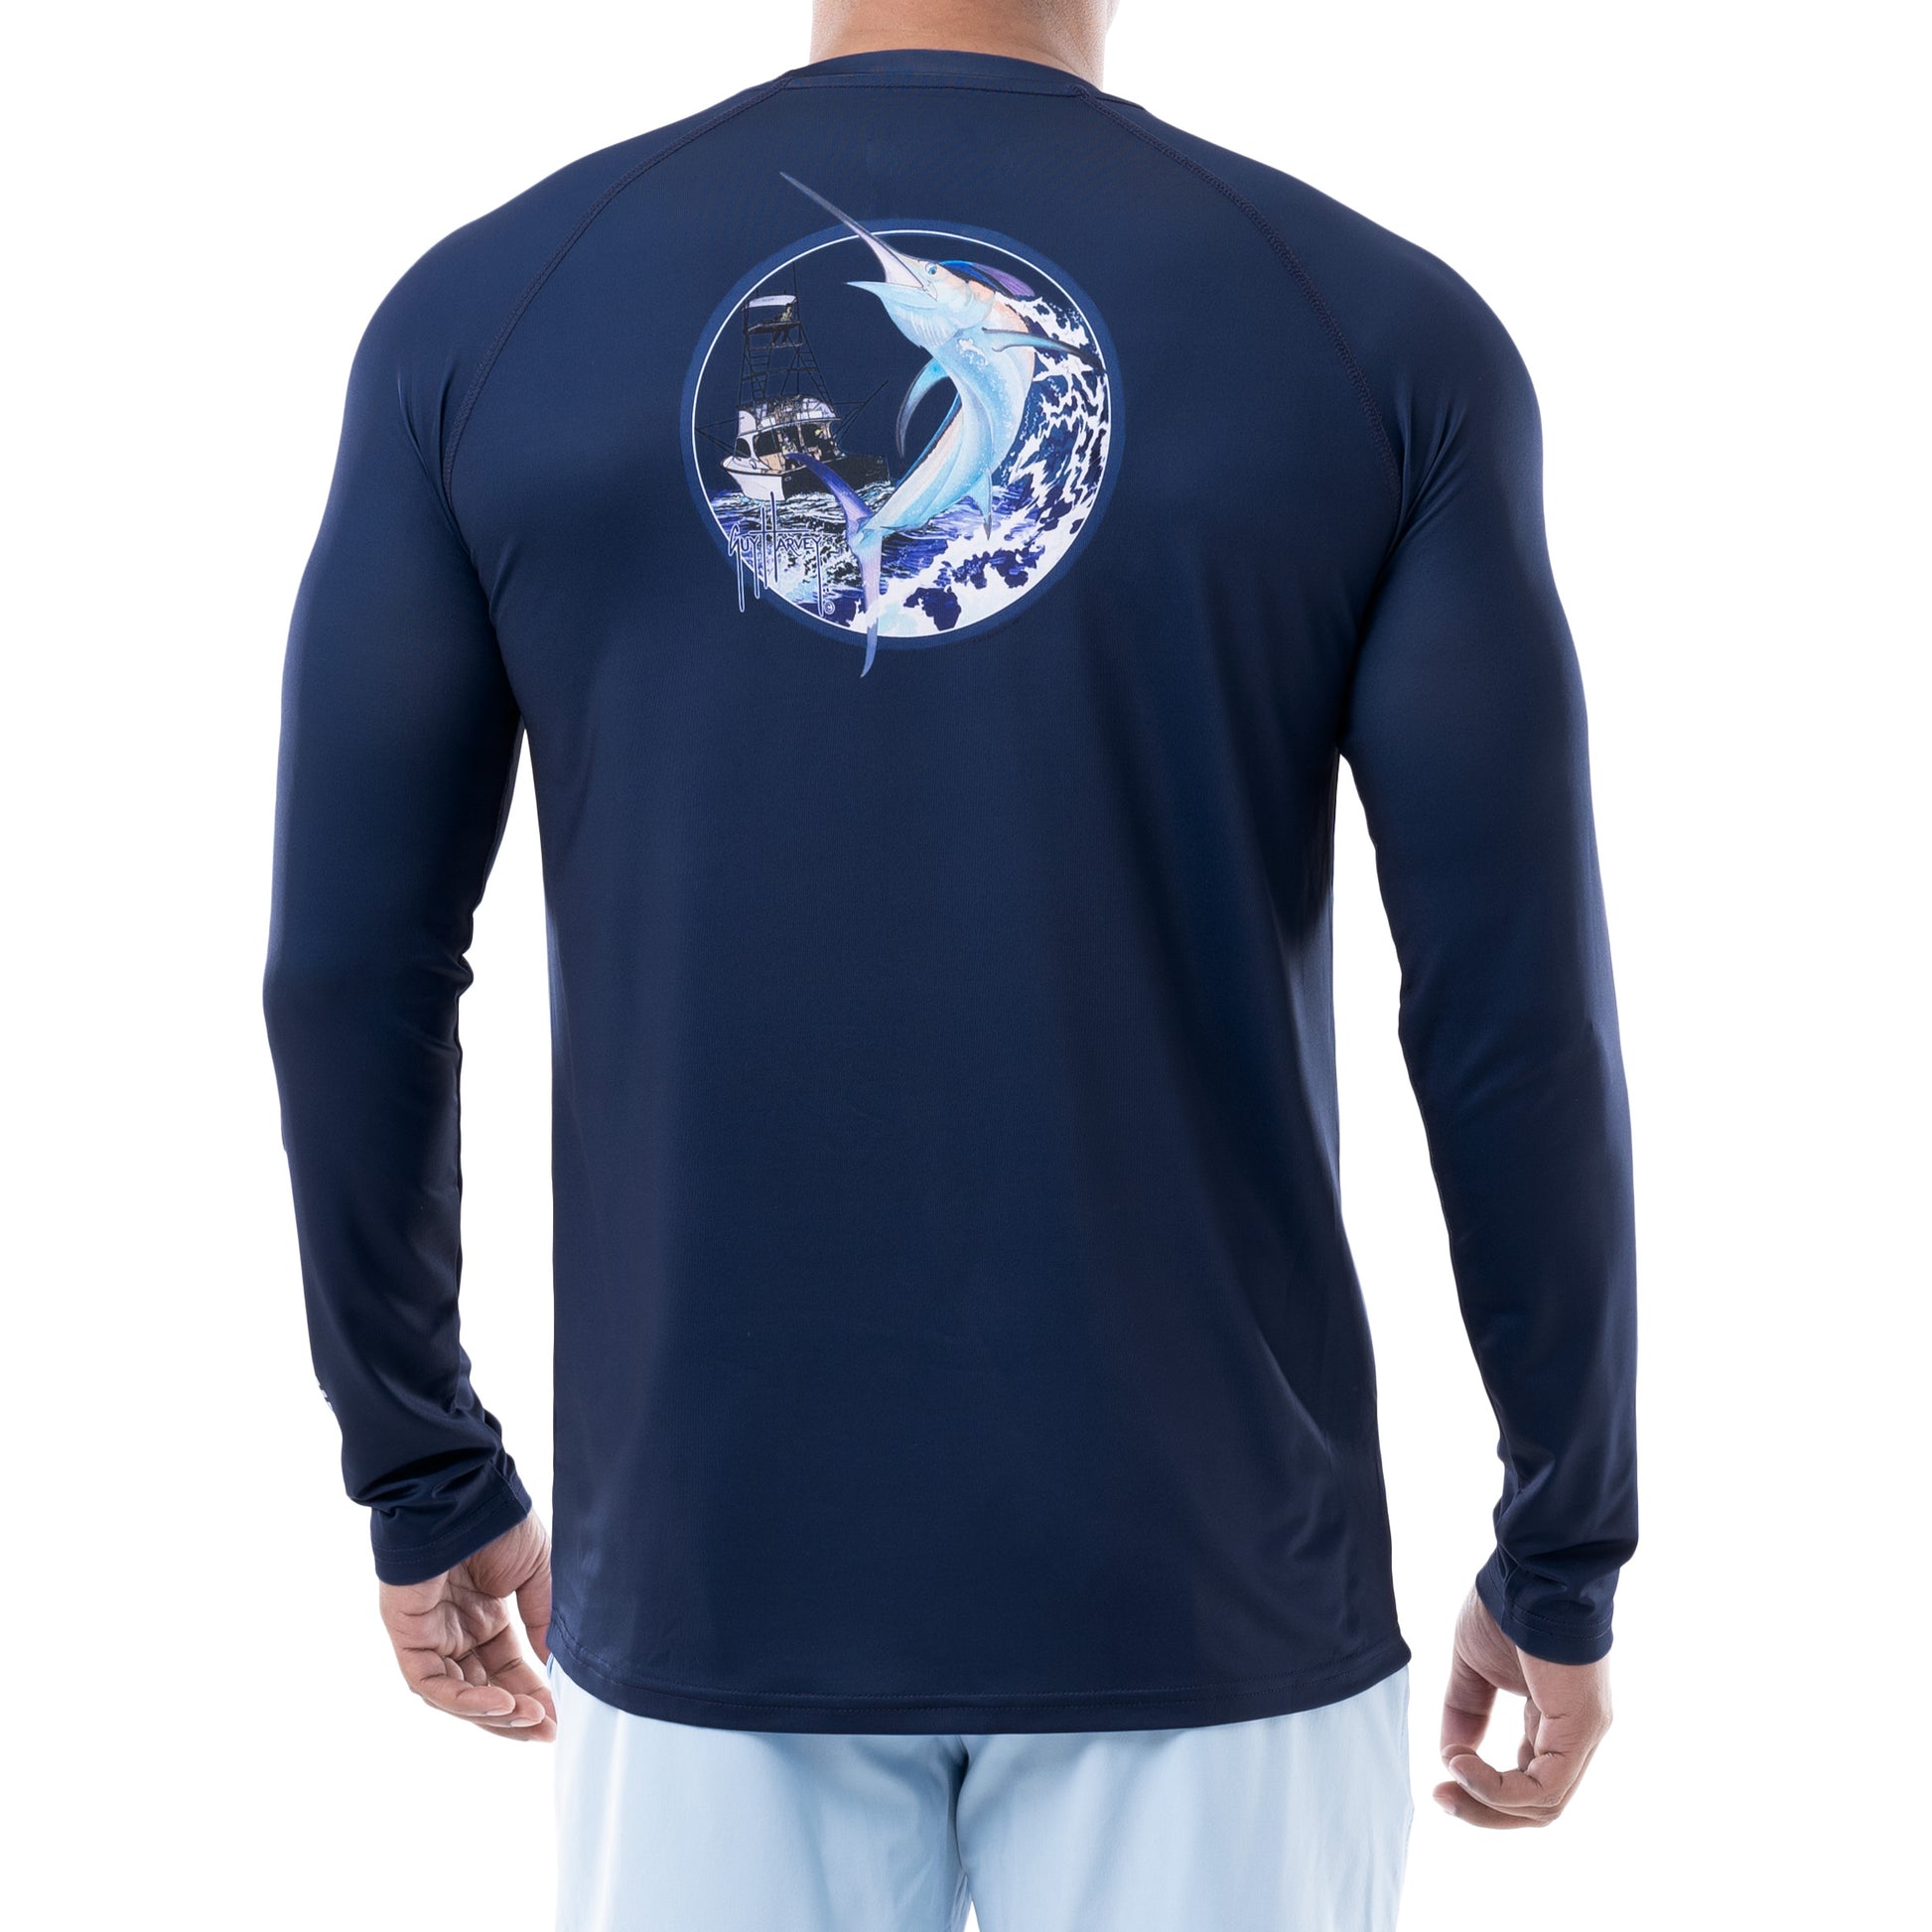  Deep Sea Fishing Powerful Marlin Long Sleeve T-Shirt